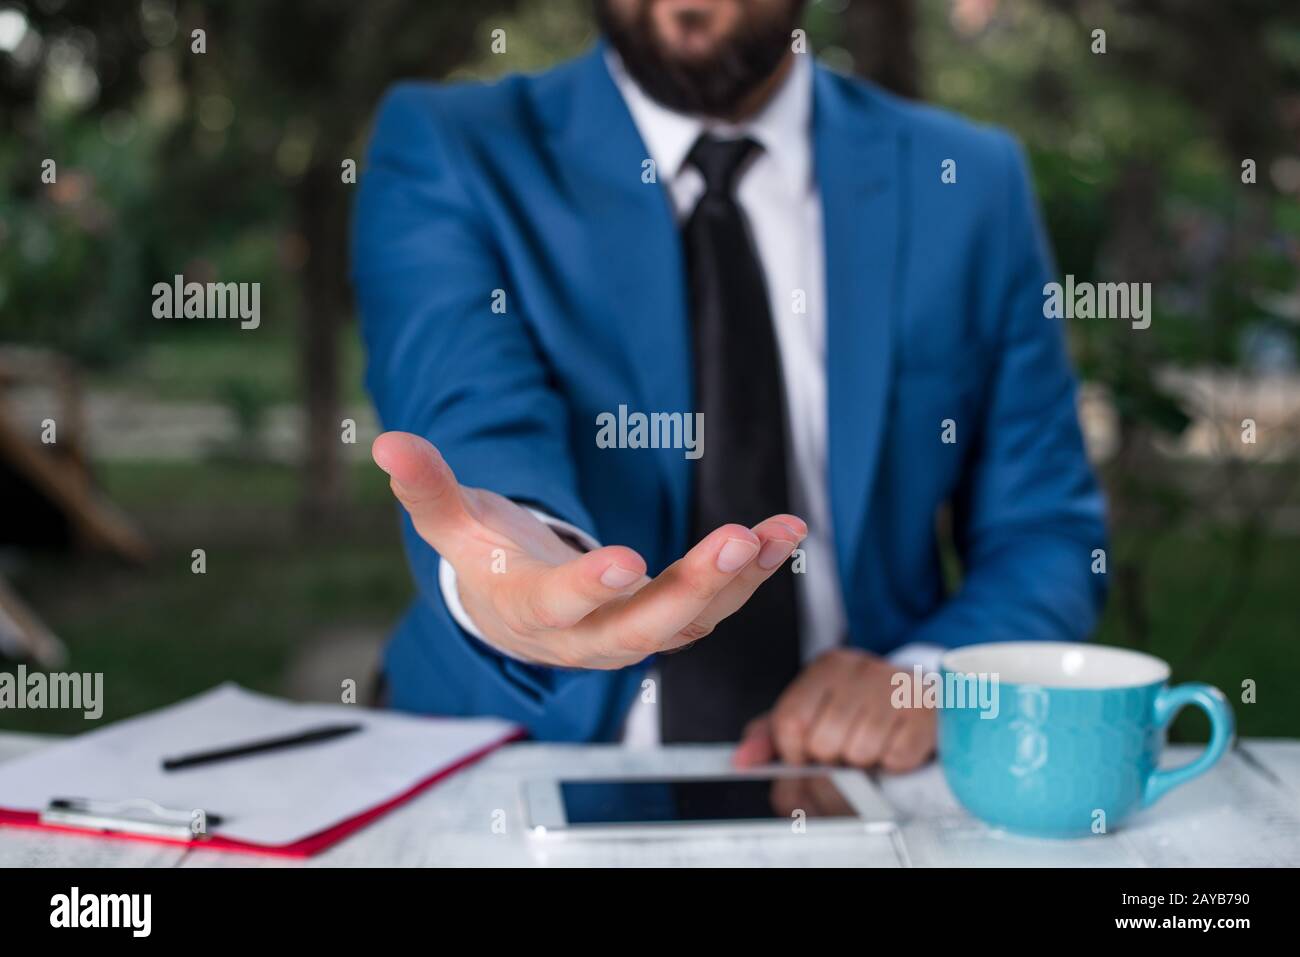 Uomo con le mani aperte davanti al tavolo. Telefono cellulare e note sul tavolo. Concetto di business con l'uomo nella suite. Foto Stock